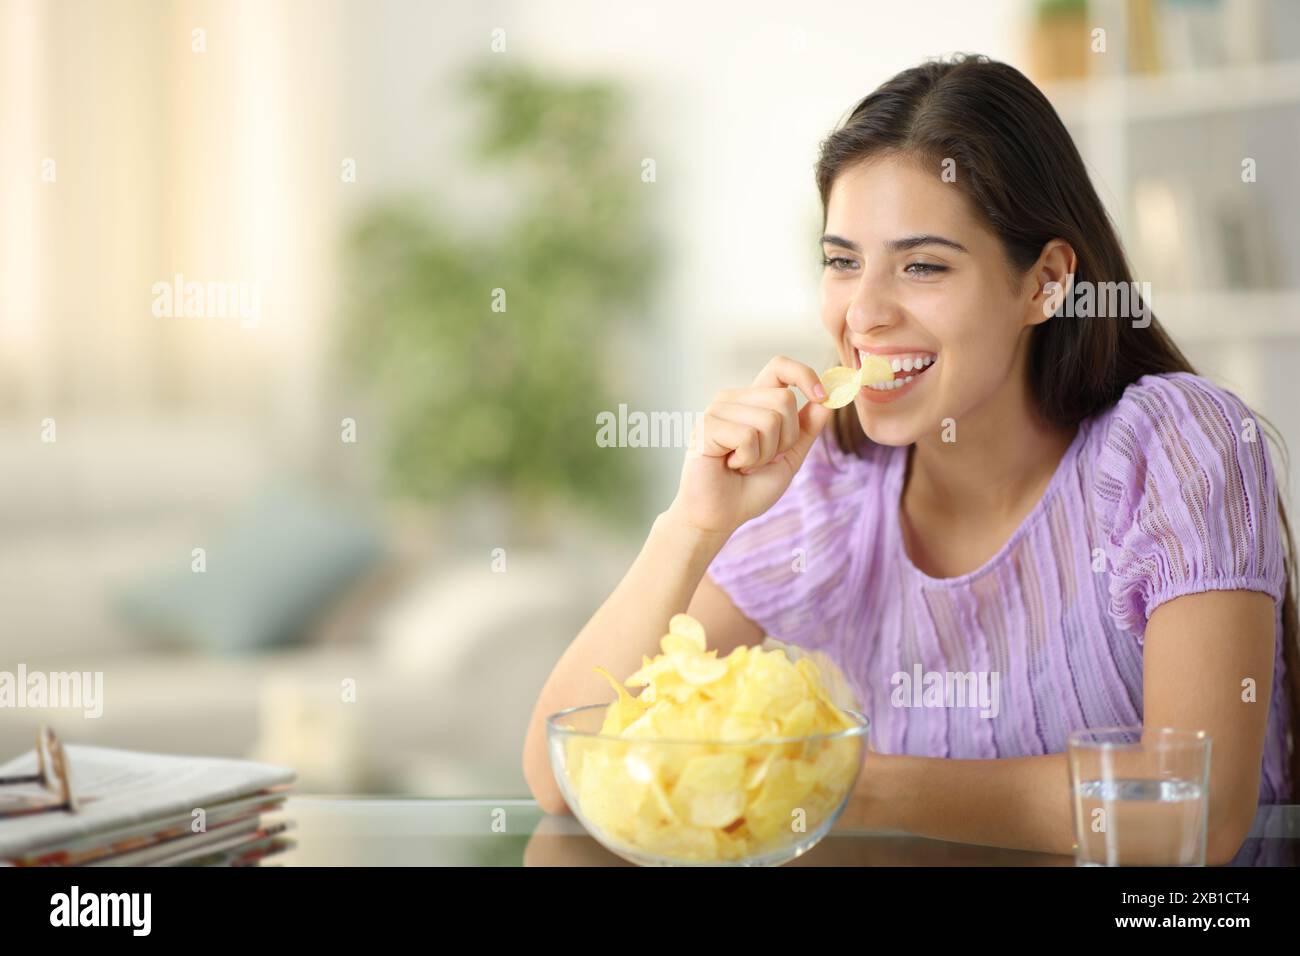 Femme heureuse riant et mangeant des chips seule à la maison Banque D'Images